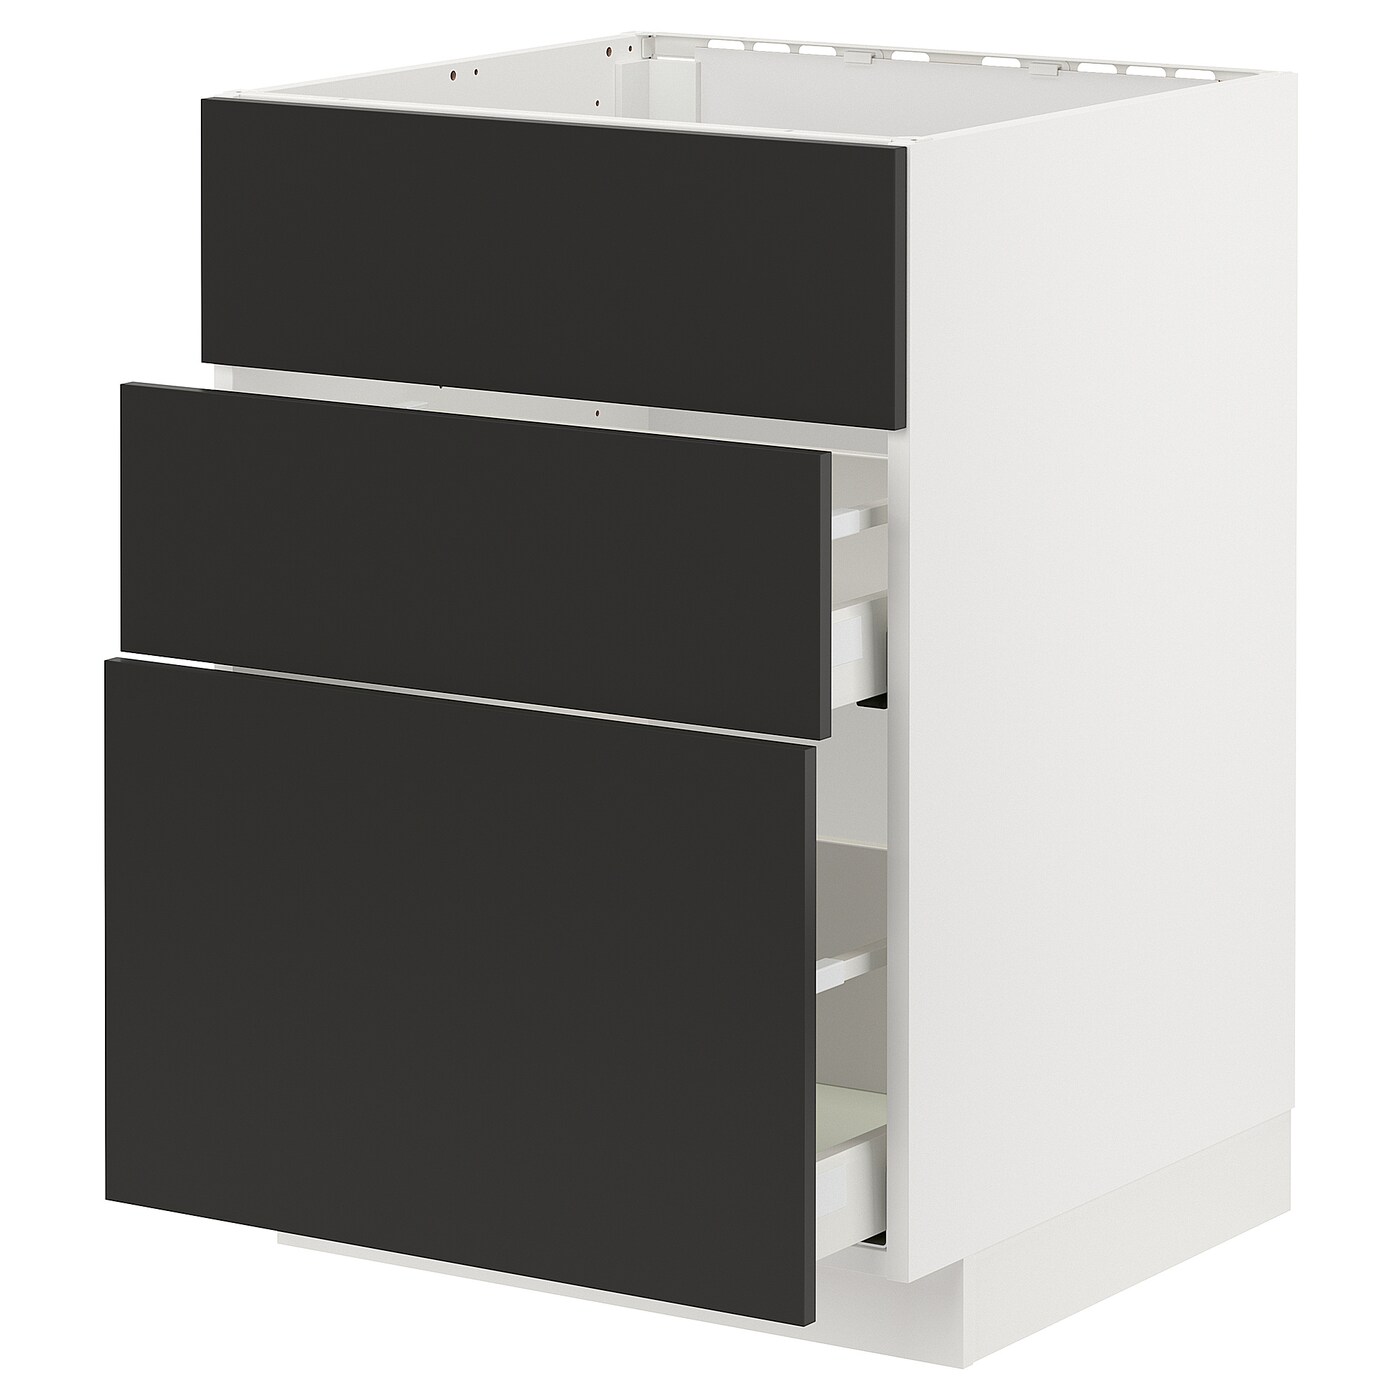 Напольный шкаф - IKEA METOD MAXIMERA, 62x80x60см, белый/черный, МЕТОД МАКСИМЕРА ИКЕА